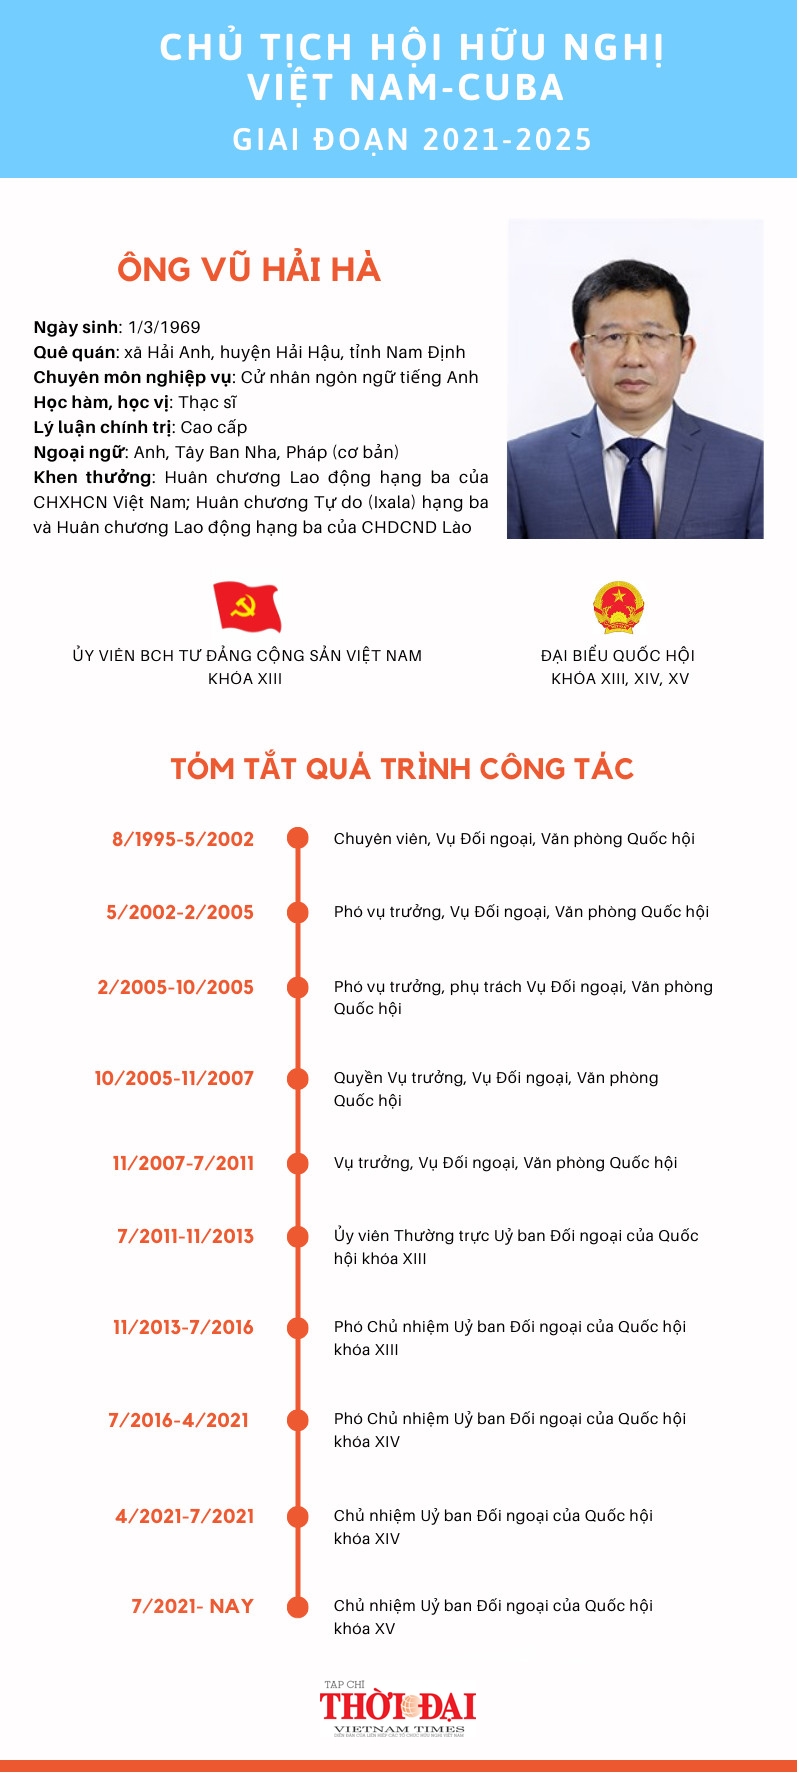 [Infographic] Chân dung Chủ tịch Hội Hữu nghị Việt Nam-Cuba giai đoạn 2021-2025 Vũ Hải Hà